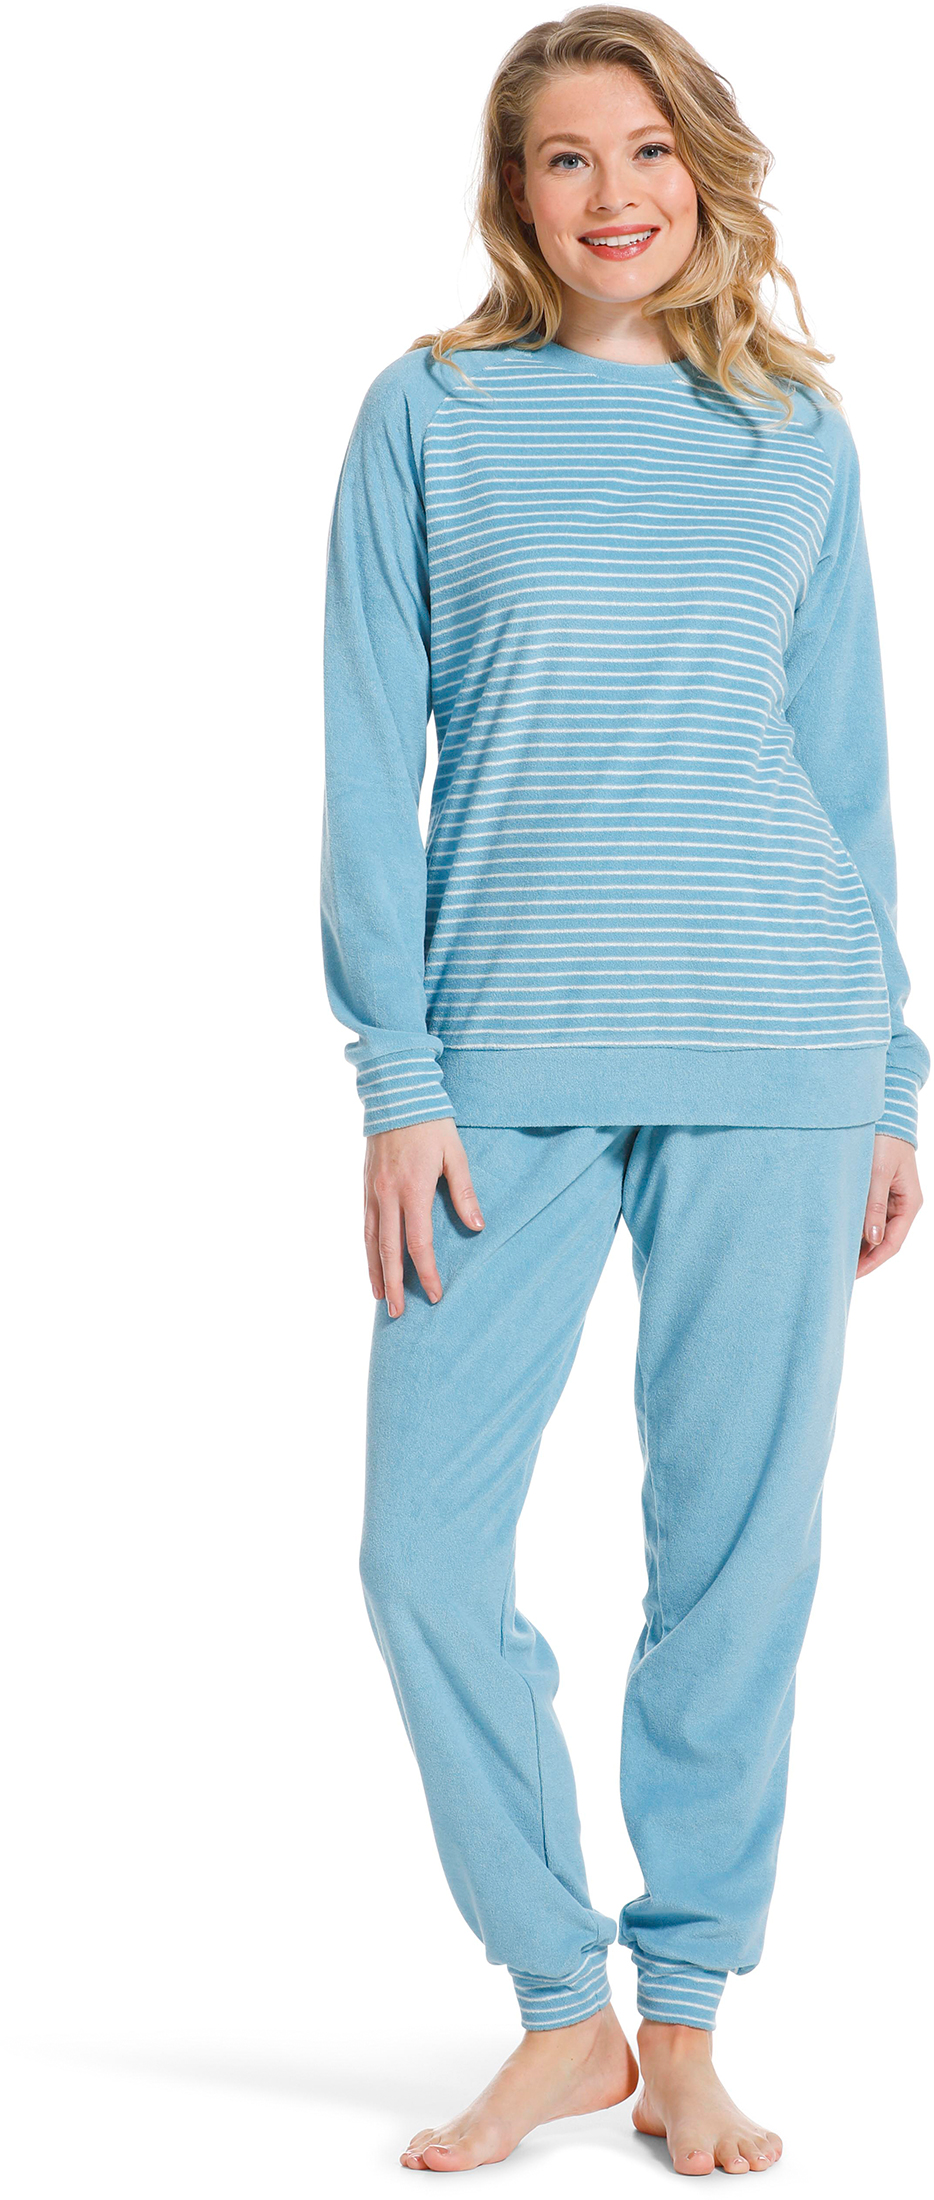 Pastunette badstof dames pyjama 20222-144-2 - Blauw - 50